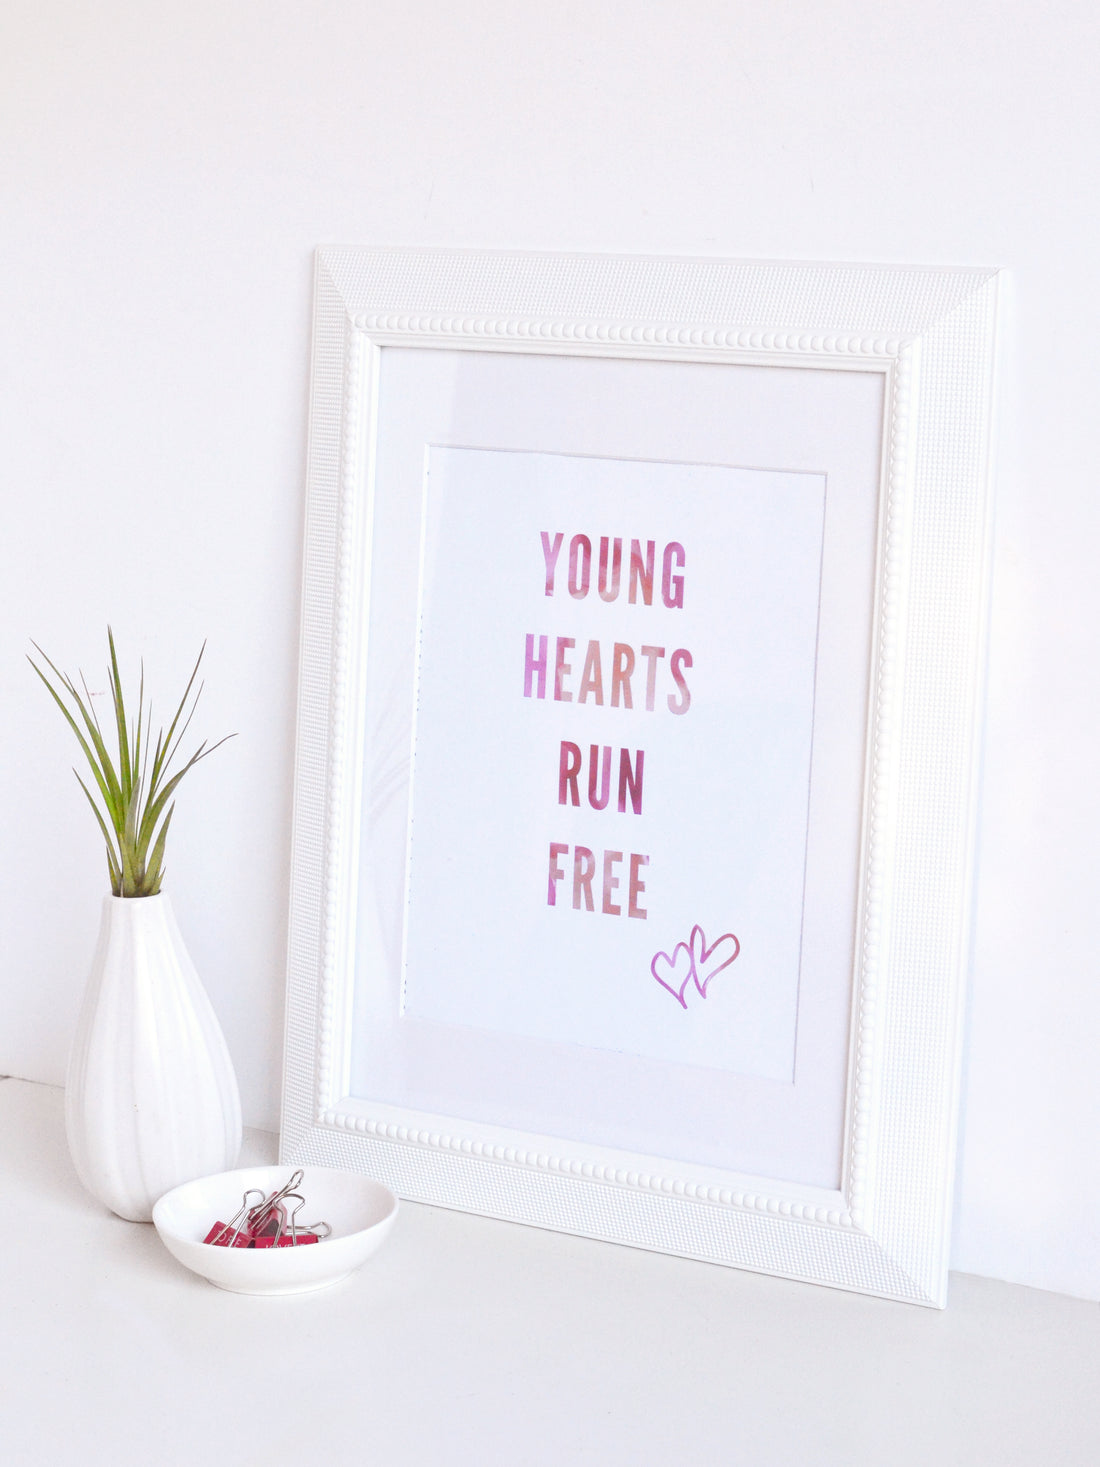 Young hearts run free printable wall art